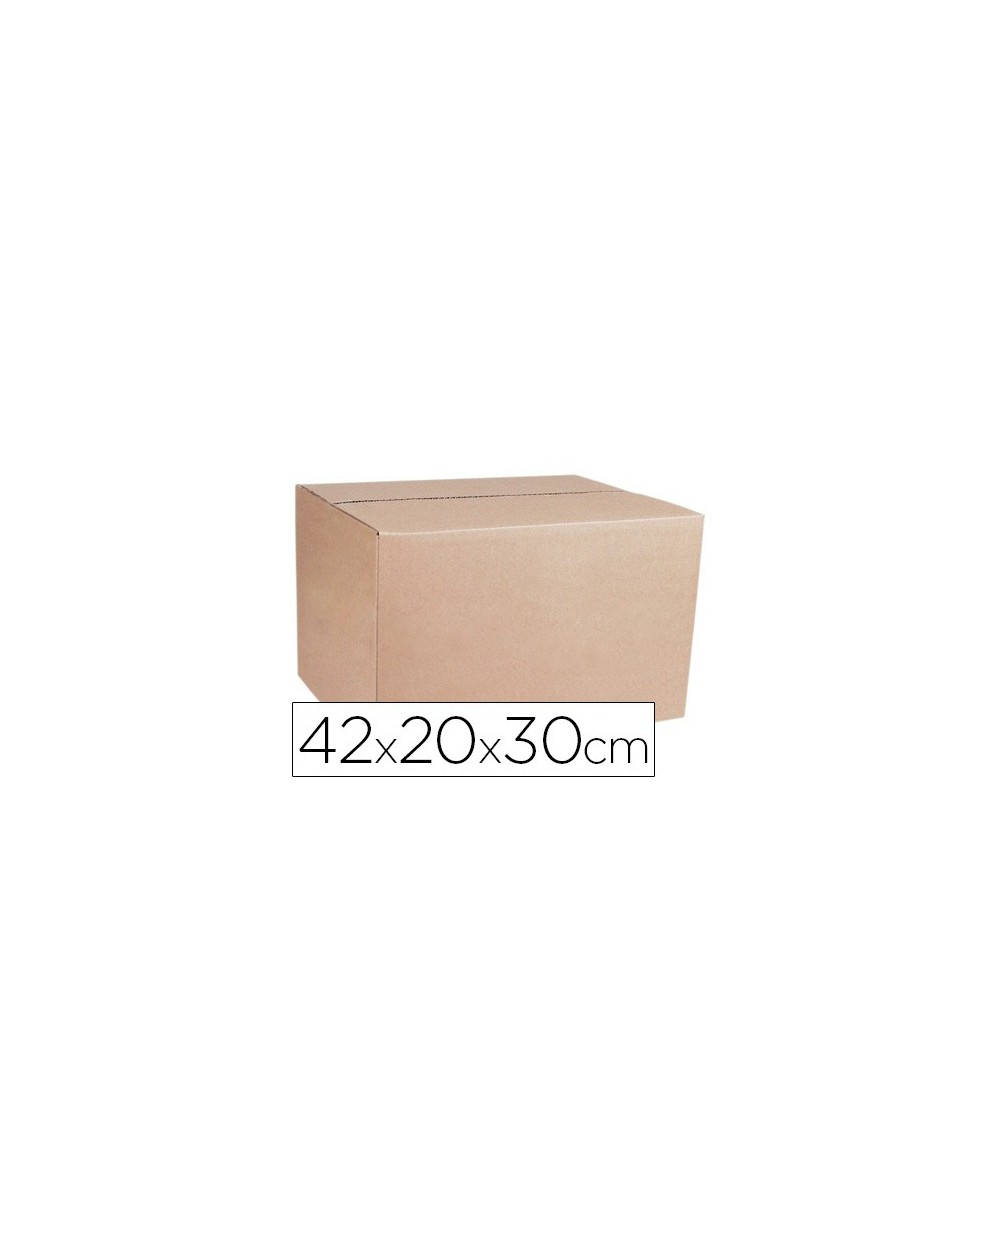 Caja de embalar marron q connect doble canal 420x200x300 mm